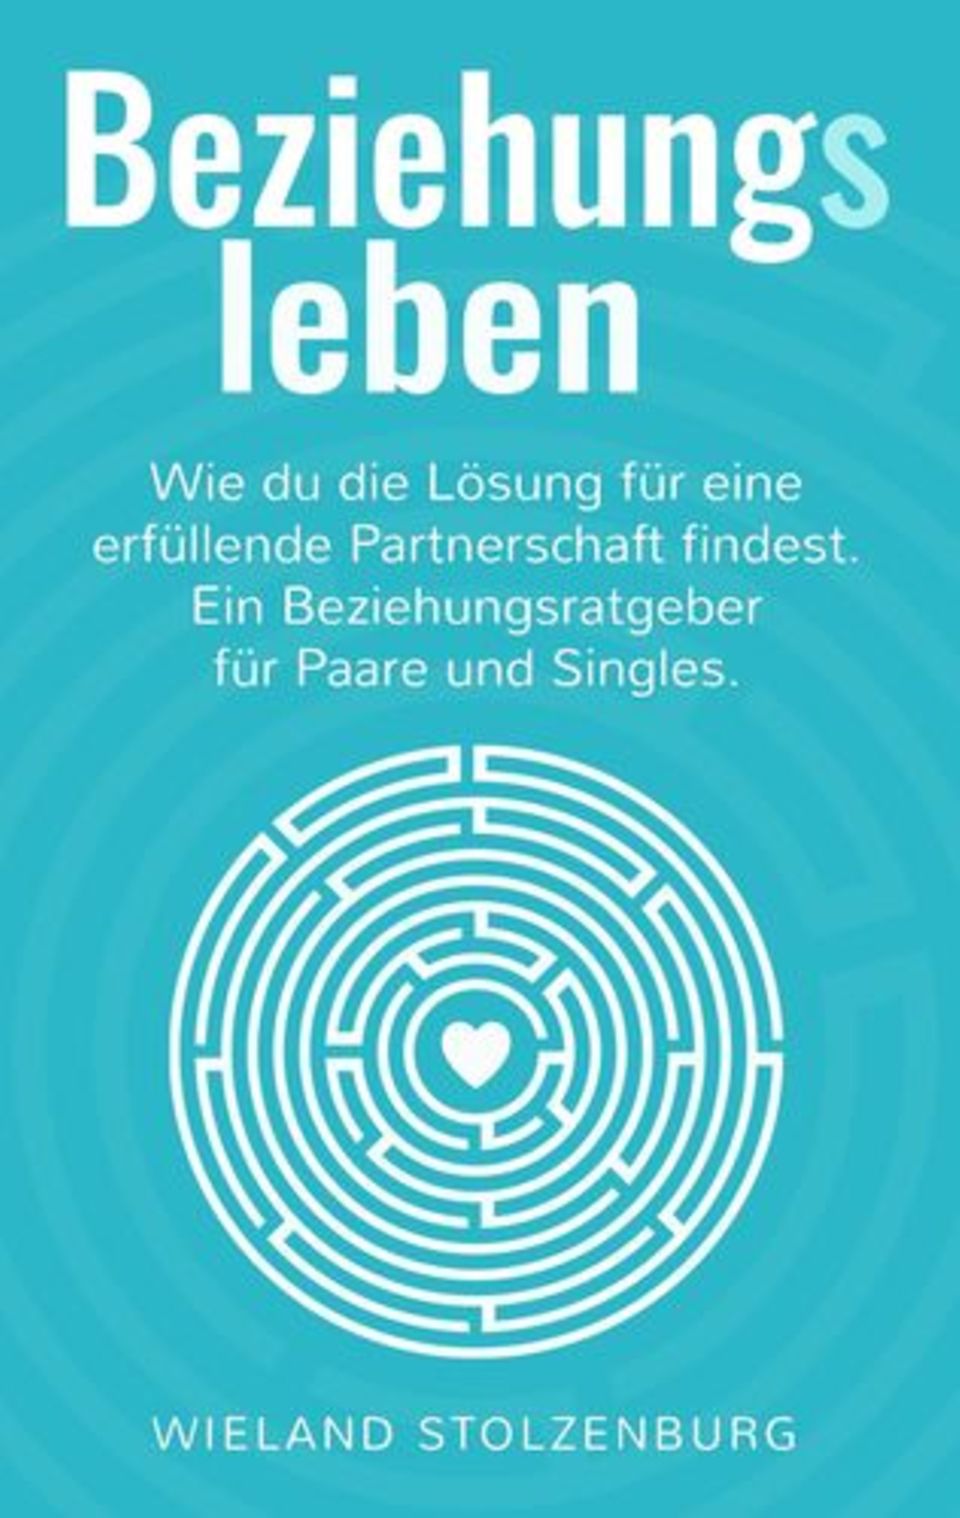 Wieland Stolzenburg: Beziehungsleben: Wie du die Lösung für eine erfüllende Partnerschaft findest. Ein Beziehungsratgeber für Paare und Singles. Verlag: Books on Demand. 